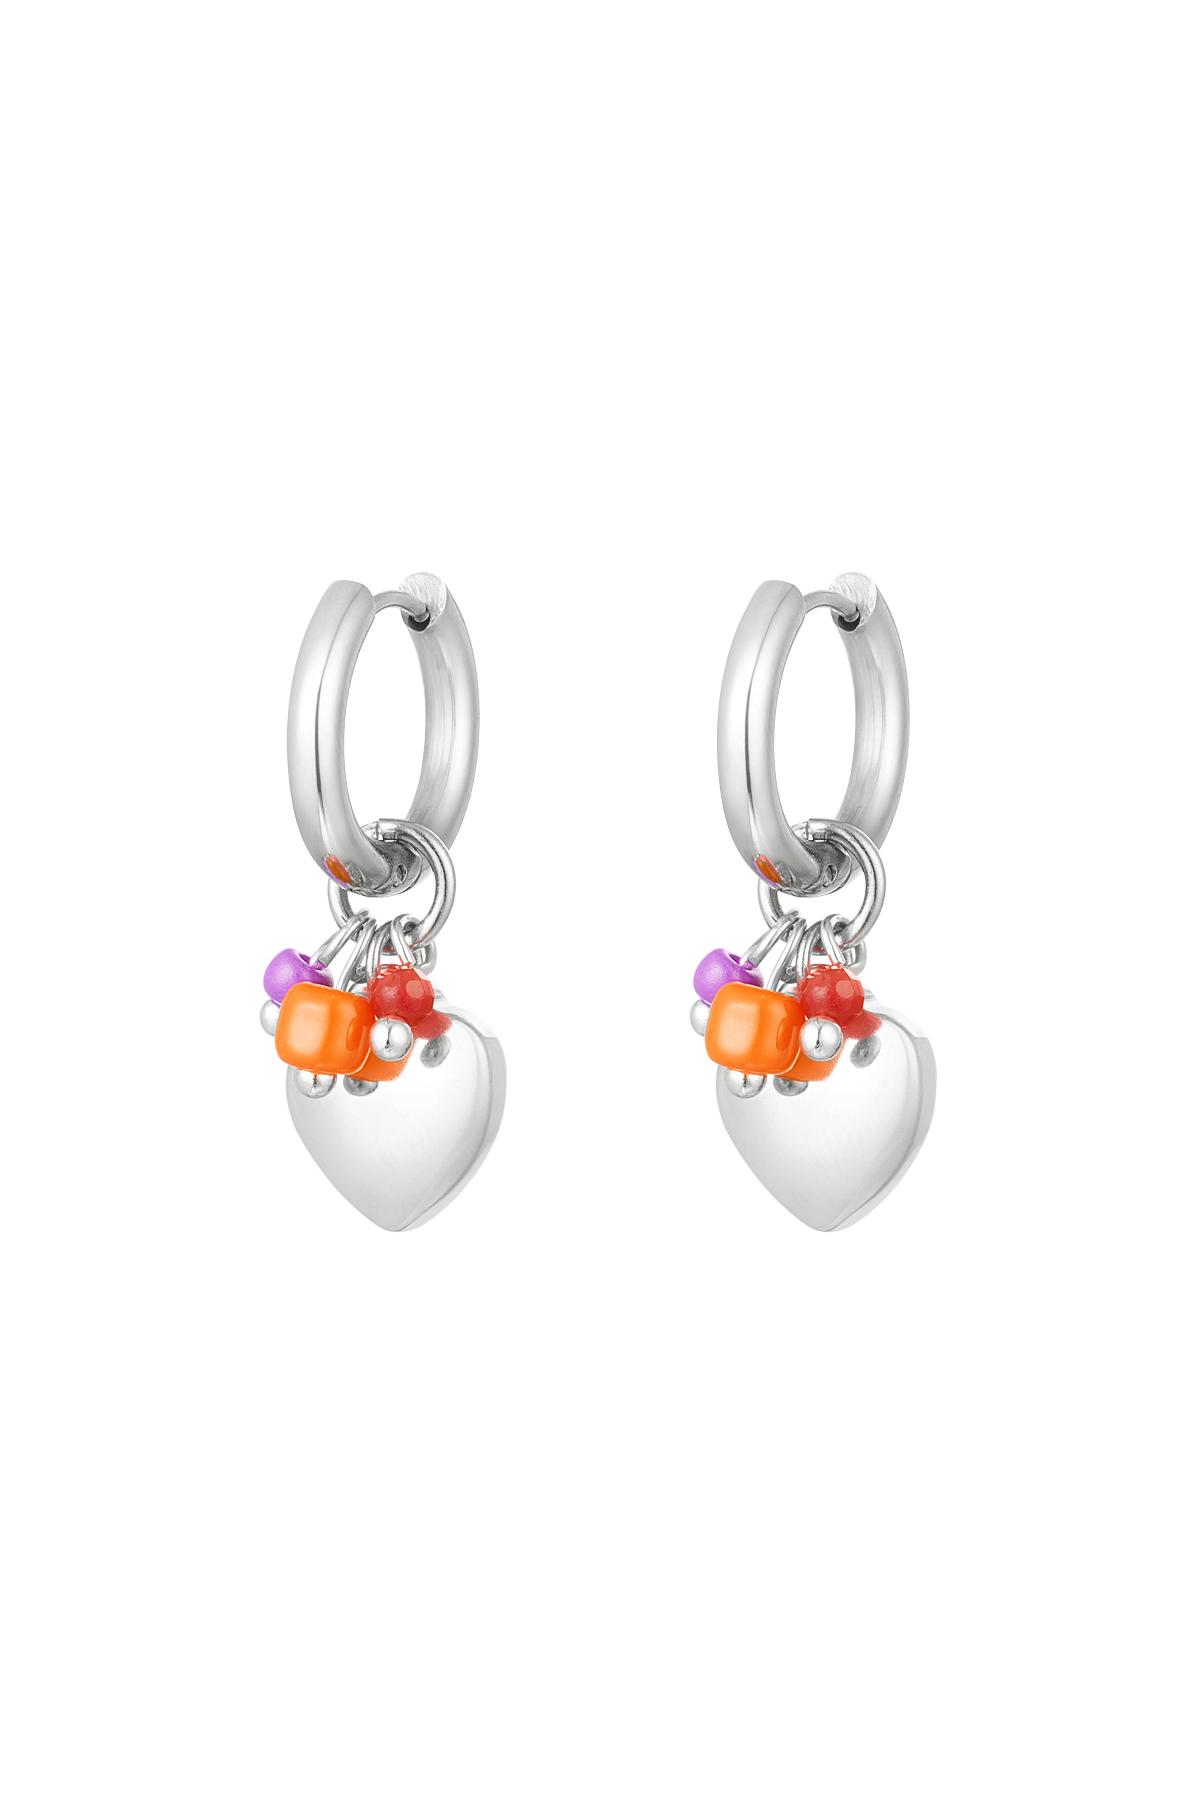 Boucles d'oreilles coeur avec perles Argenté Acier inoxydable 